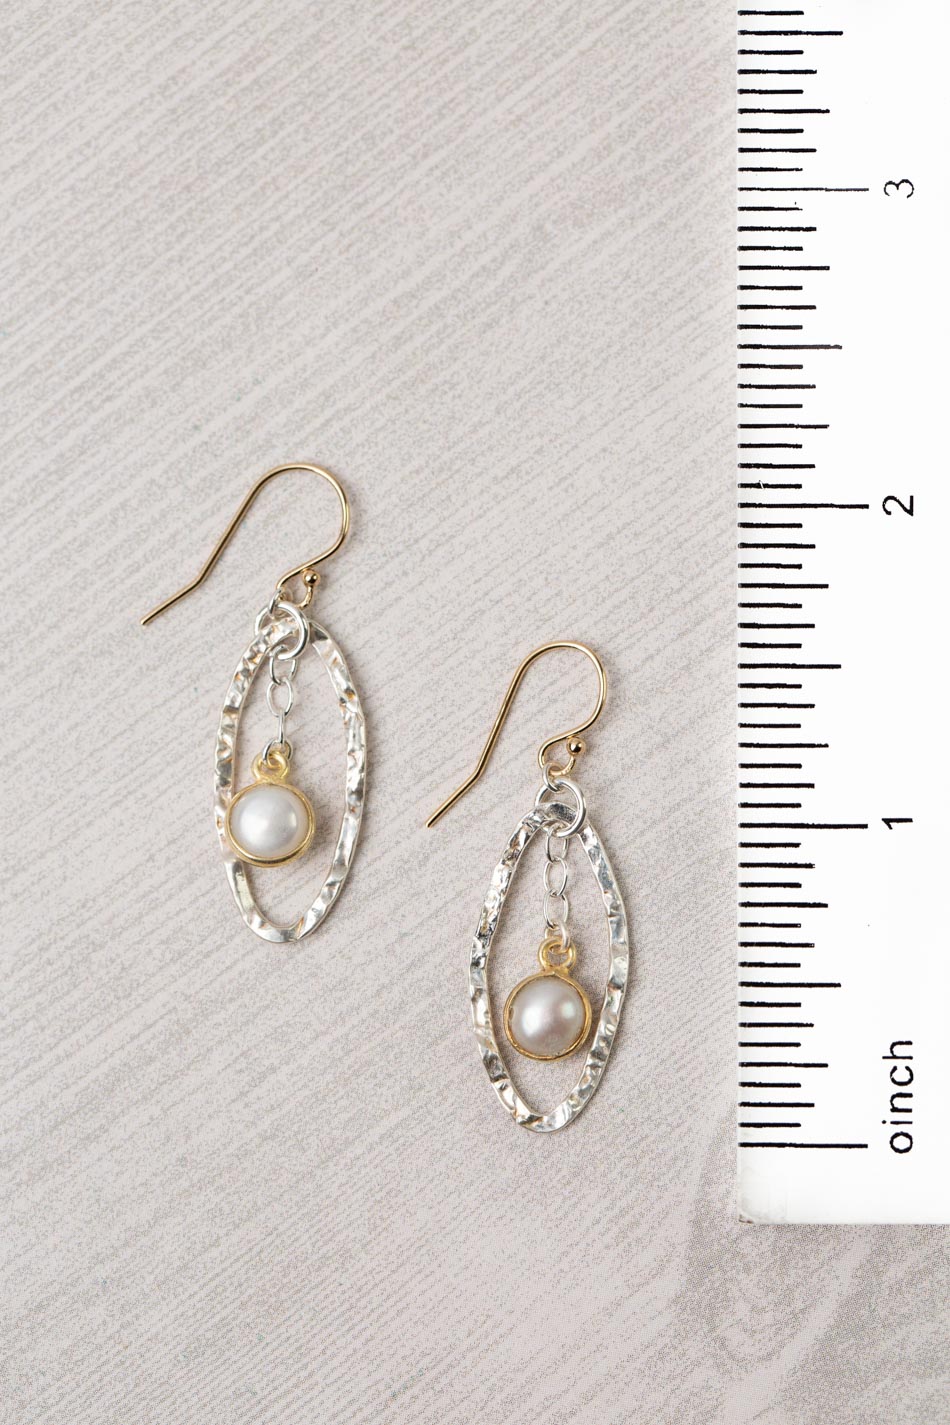 Seaside Pearl Statement Earrings